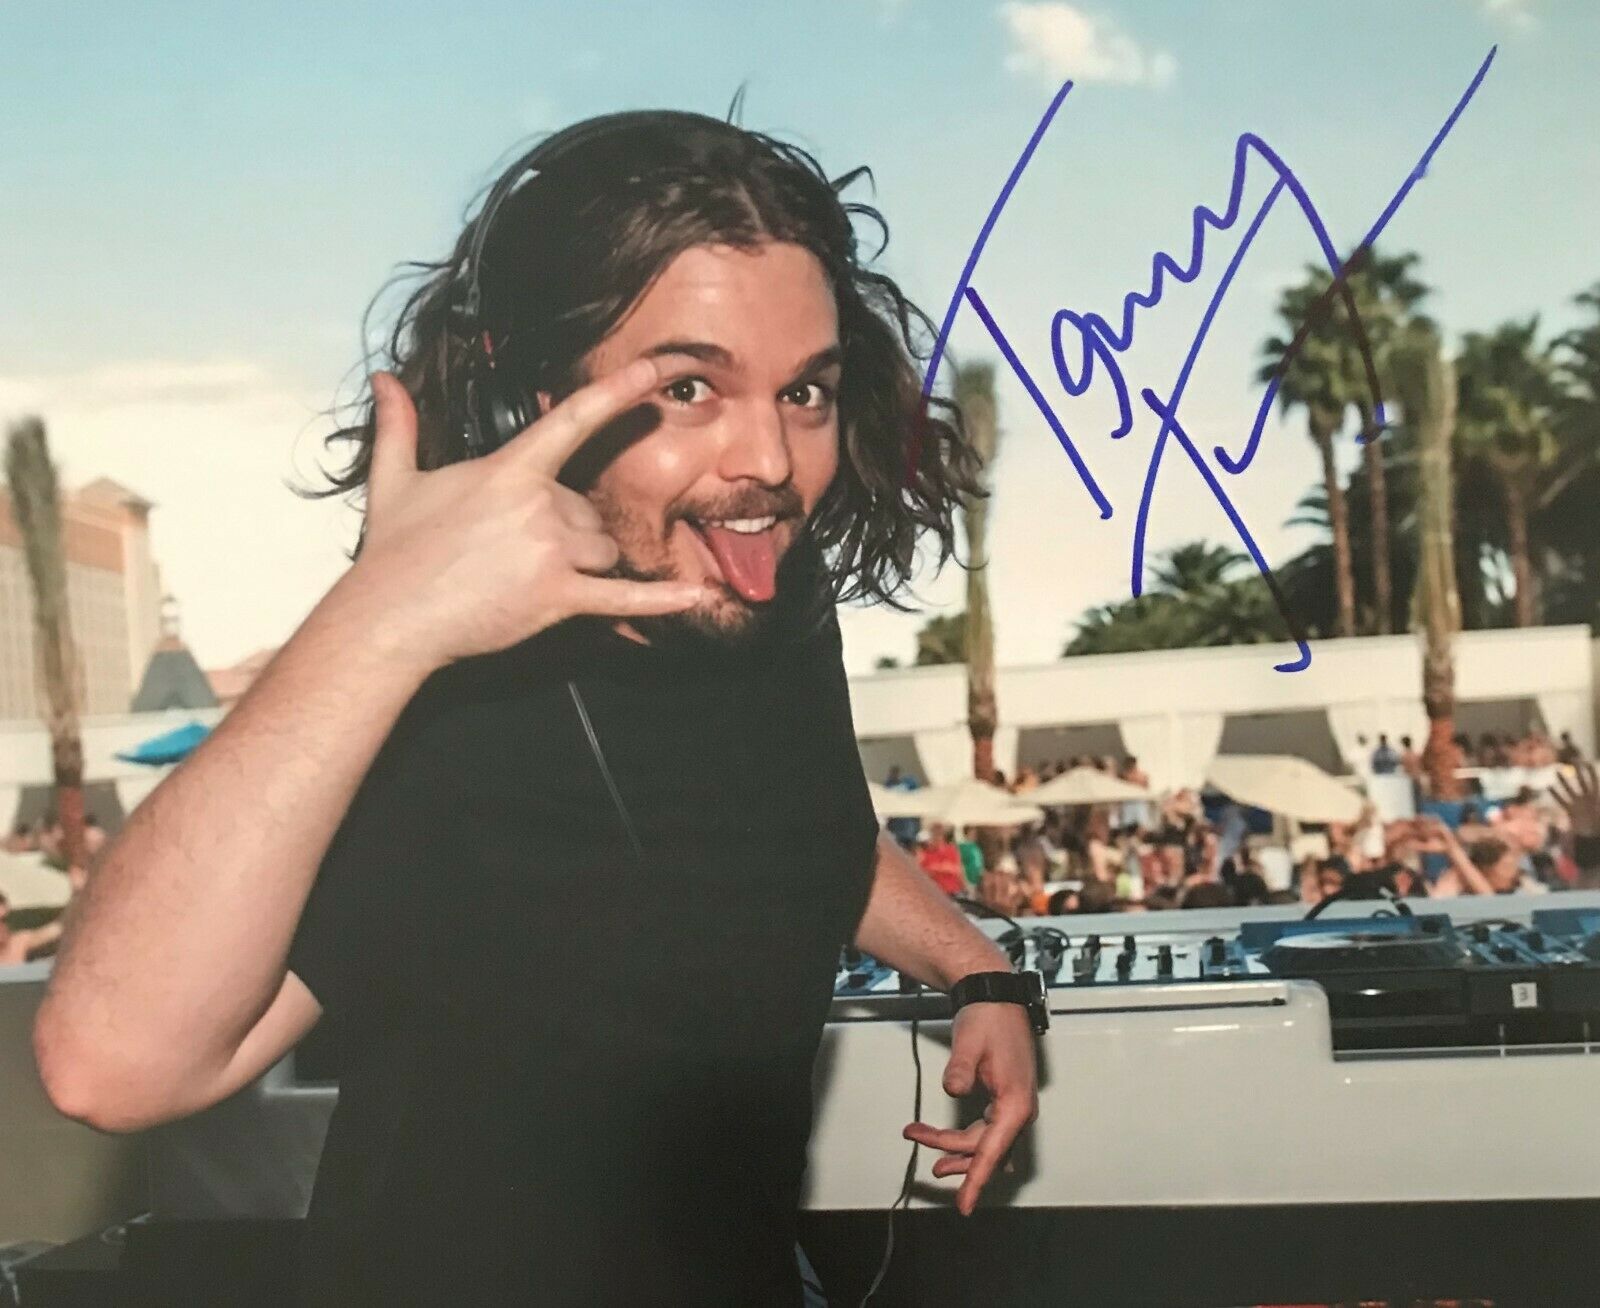 Tommy Trash Australian Dj Electronica Signed 8x10 Autographed Photo Coa E2